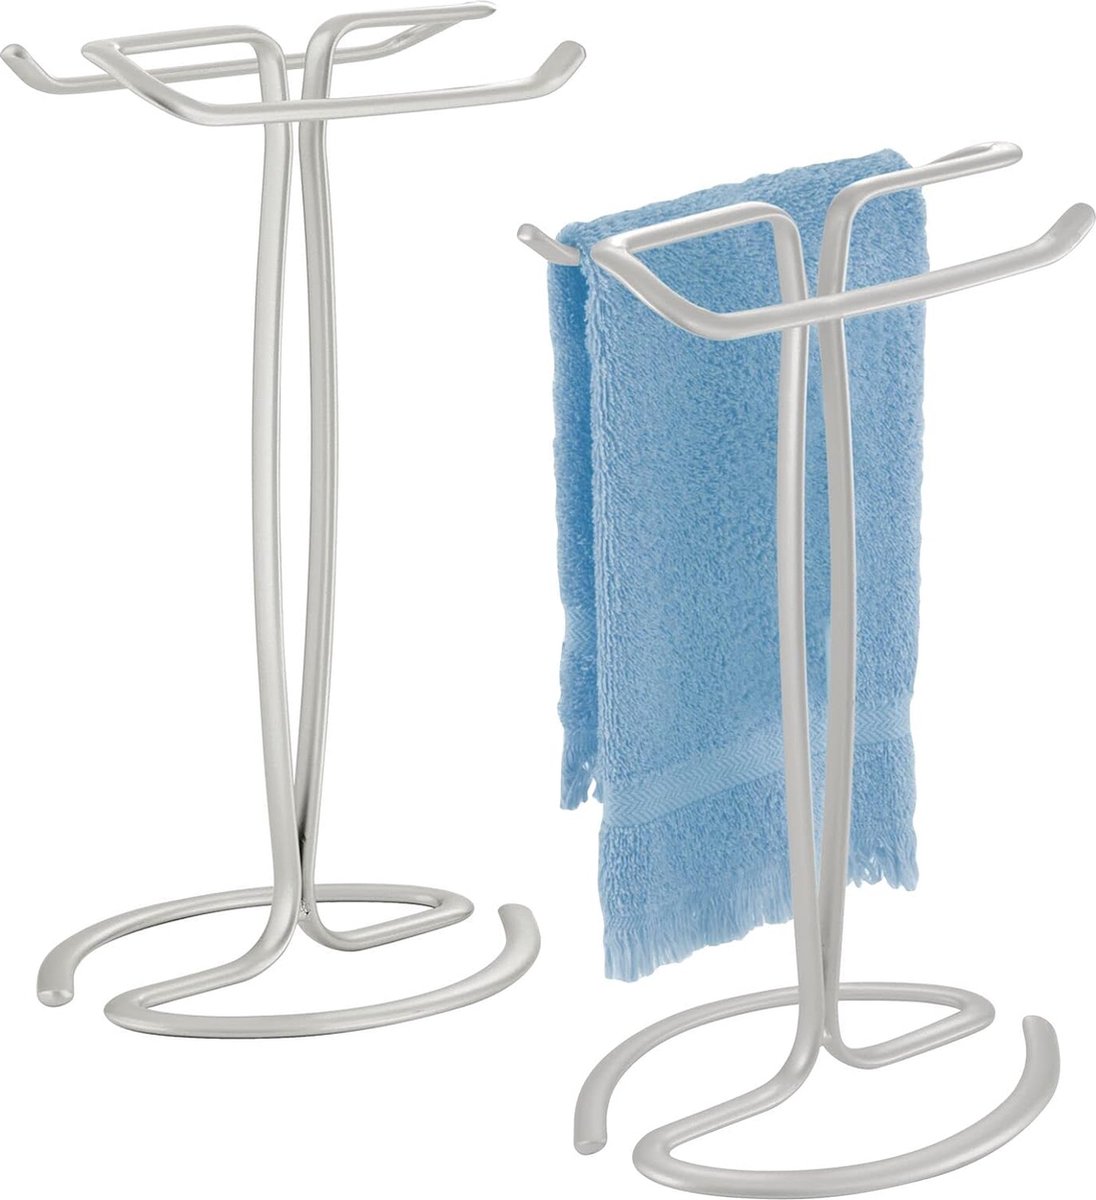 Badkamerhanddoekrek - Vrijstaand handdoekenrek voor 2 kleine gastendoekjes - Compact metalen handdoekenrek - Set van 2 - Lichtgrijs